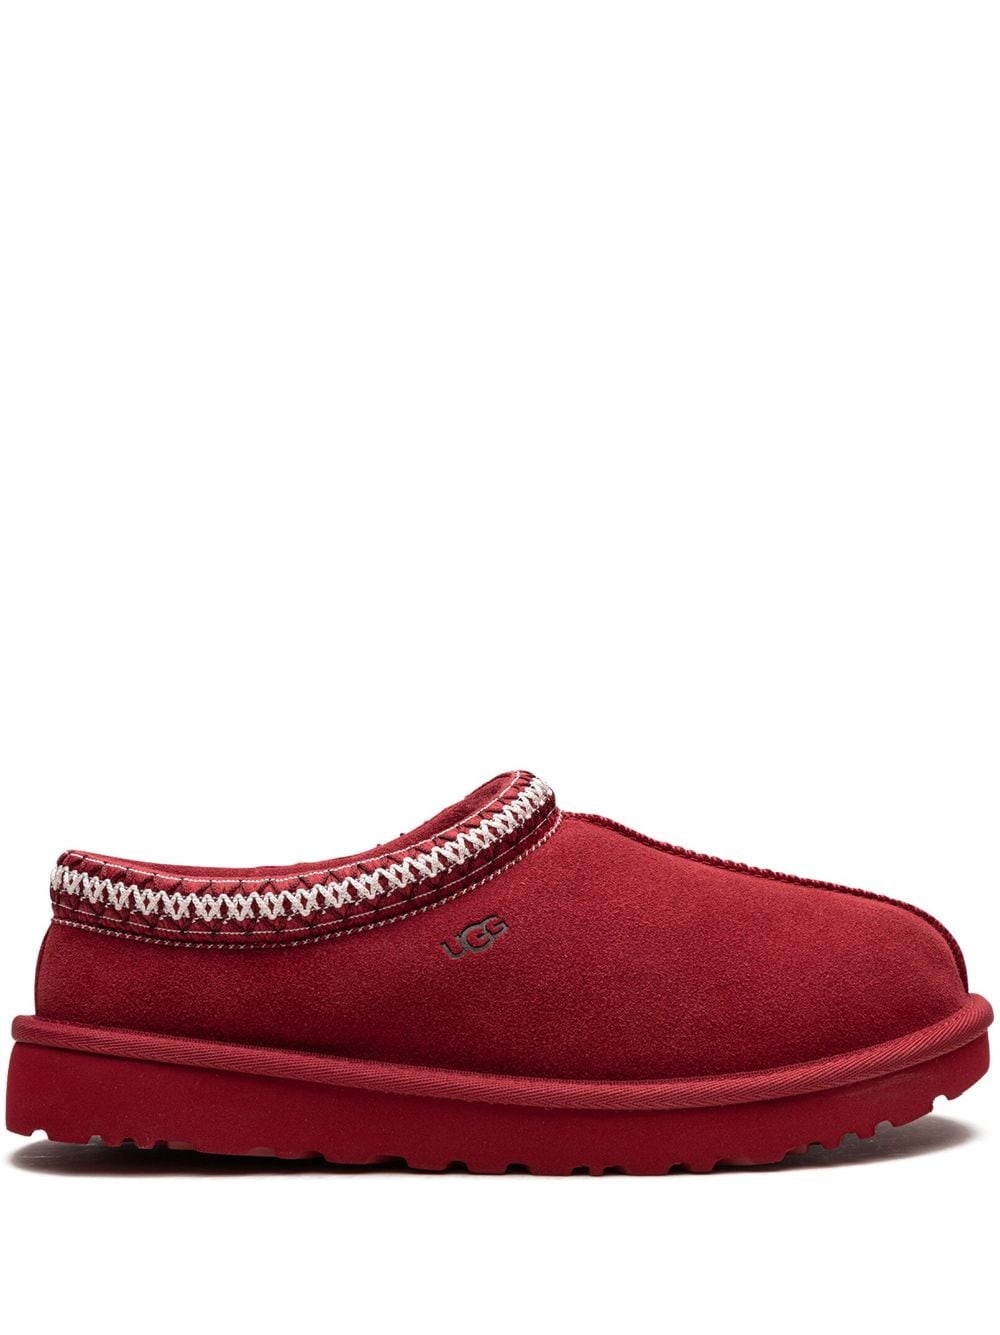 UGG Tasman suede slippers - Red von UGG